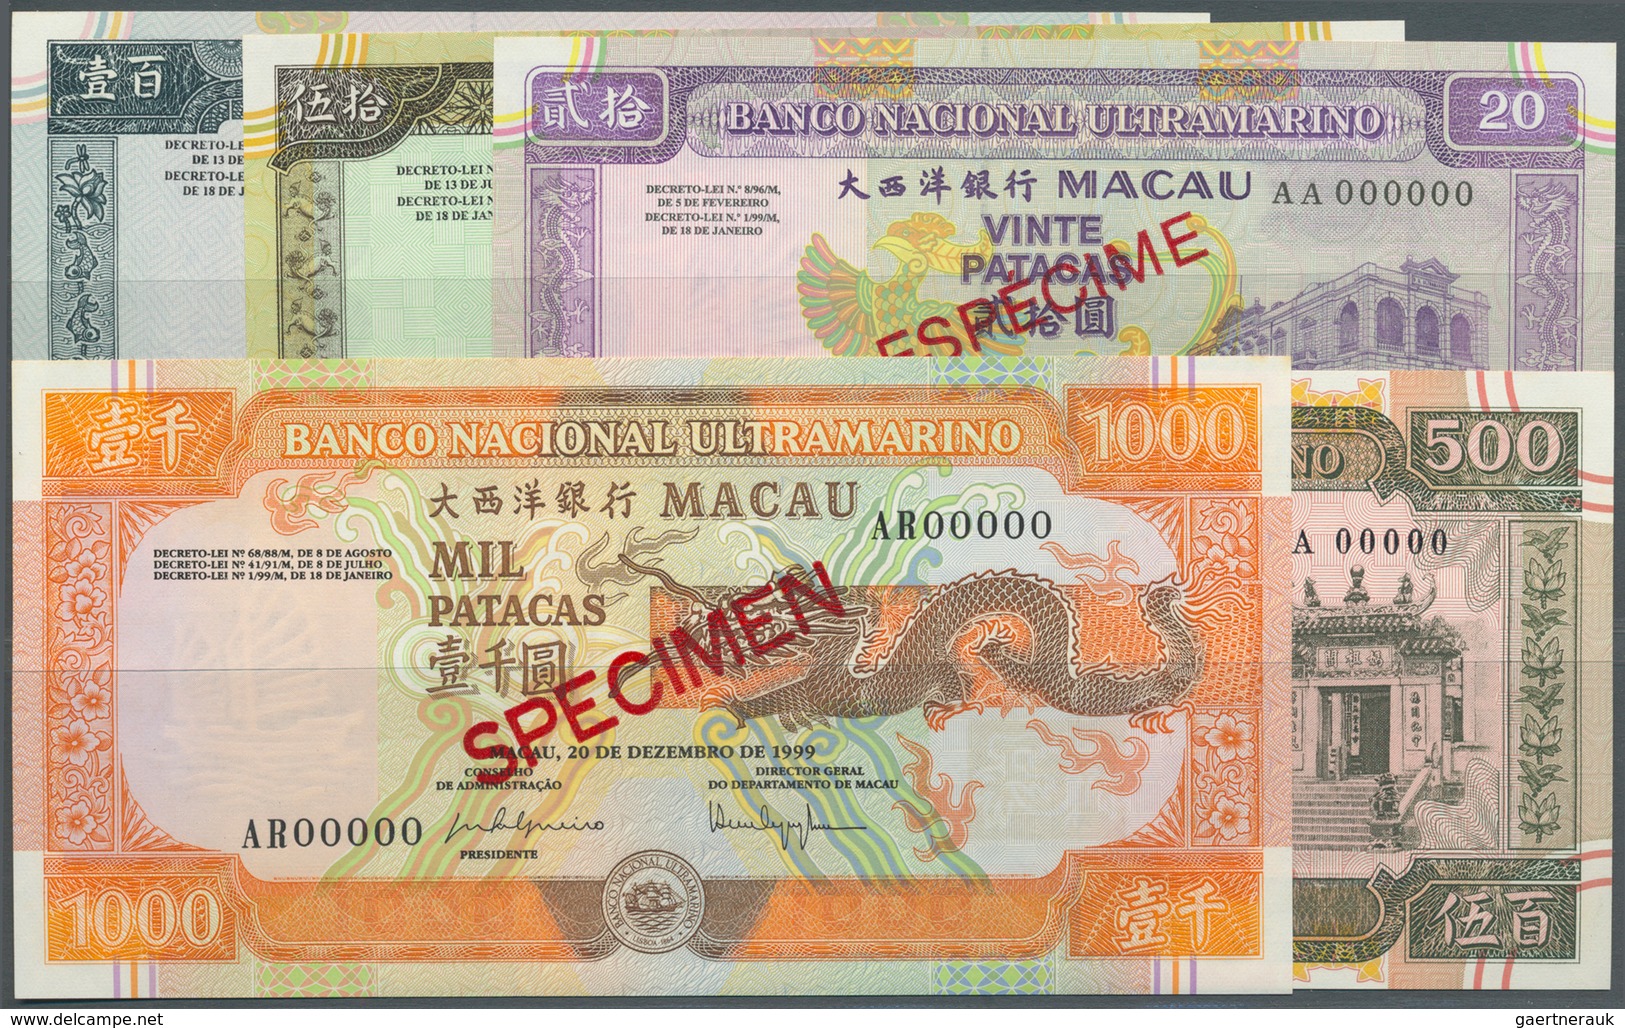 01958 Macau / Macao: Banco Nacional Ultramarino, Highly Rare Specimen Set Of The December 20th 1999 Series - Macao